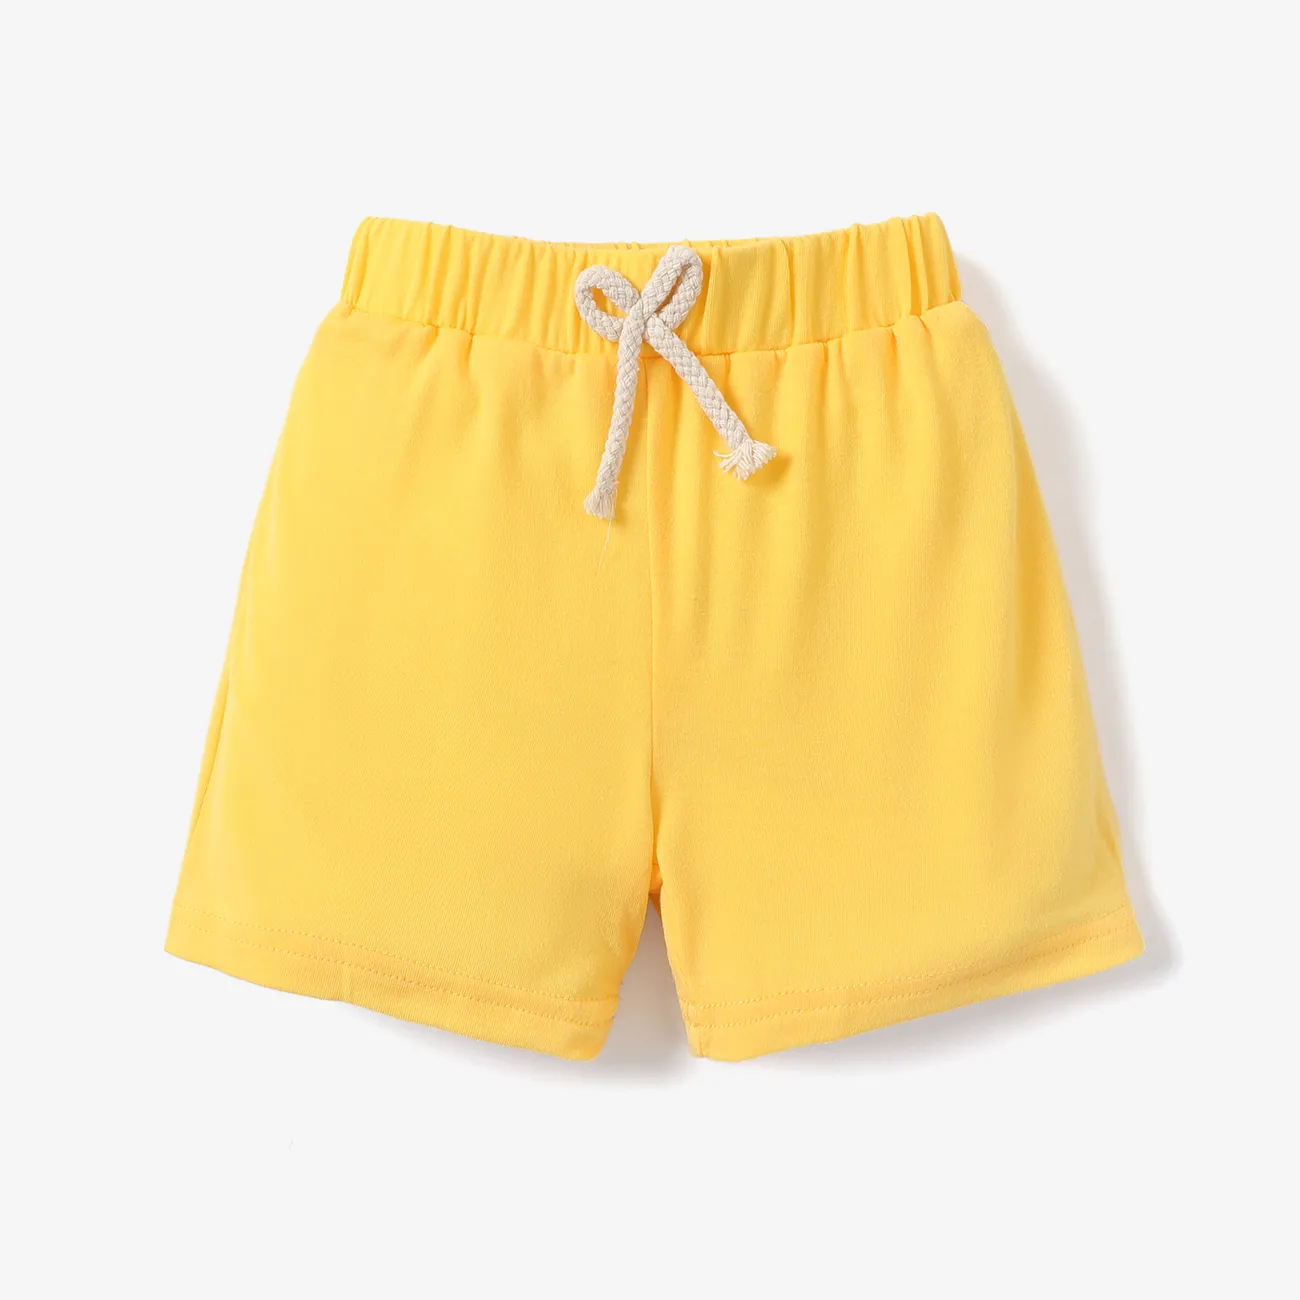 Kleinkinder Unisex Basics Shorts gelb big image 1